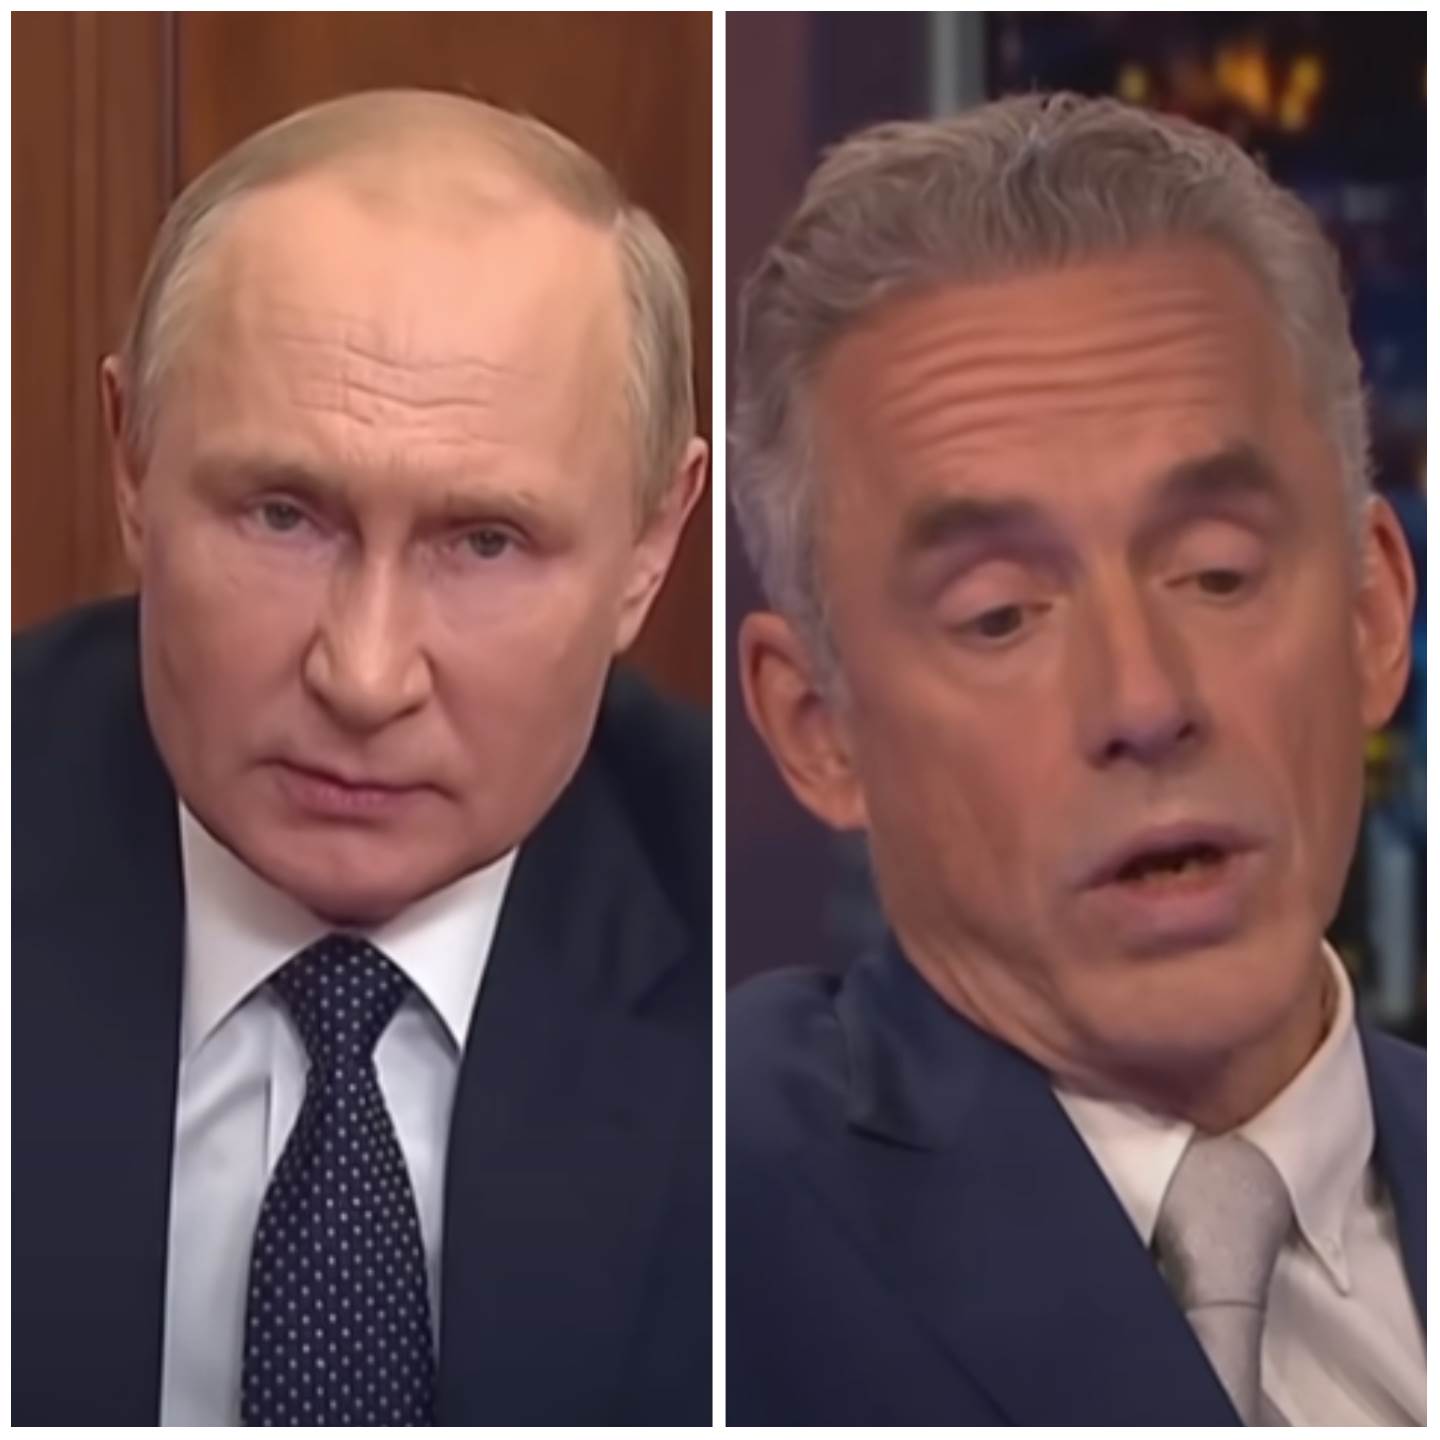  PITERSON OPET ŠOKIRAO: "RUSIJA NE MOŽE DA IZGUBI RAT"! Putin je već pobijedio 